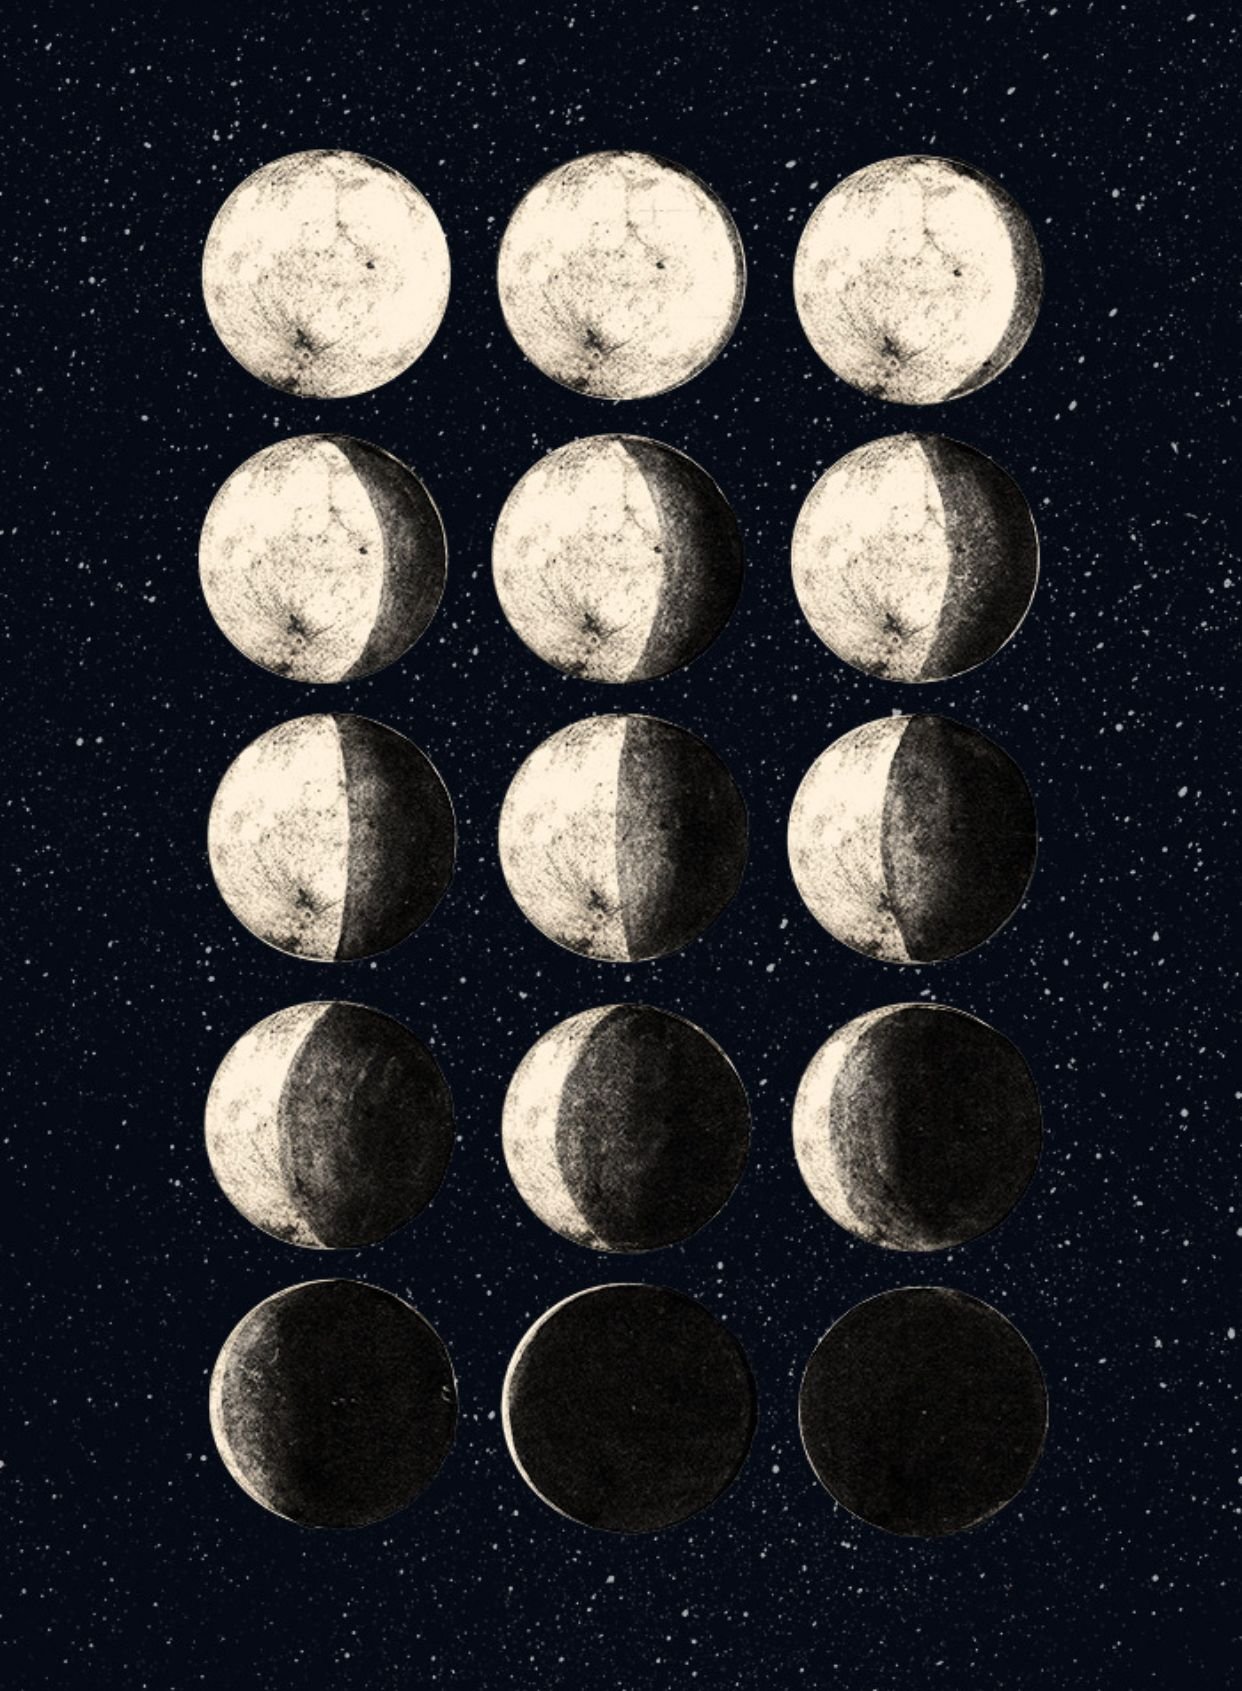 Фазы луны 24г. Фазы Луны. Цикл Луны арт. Ф̆̈ӑ̈з̆̈ы̆̈ Л̆̈ў̈н̆̈ы̆̈. Луна в разных фазах.